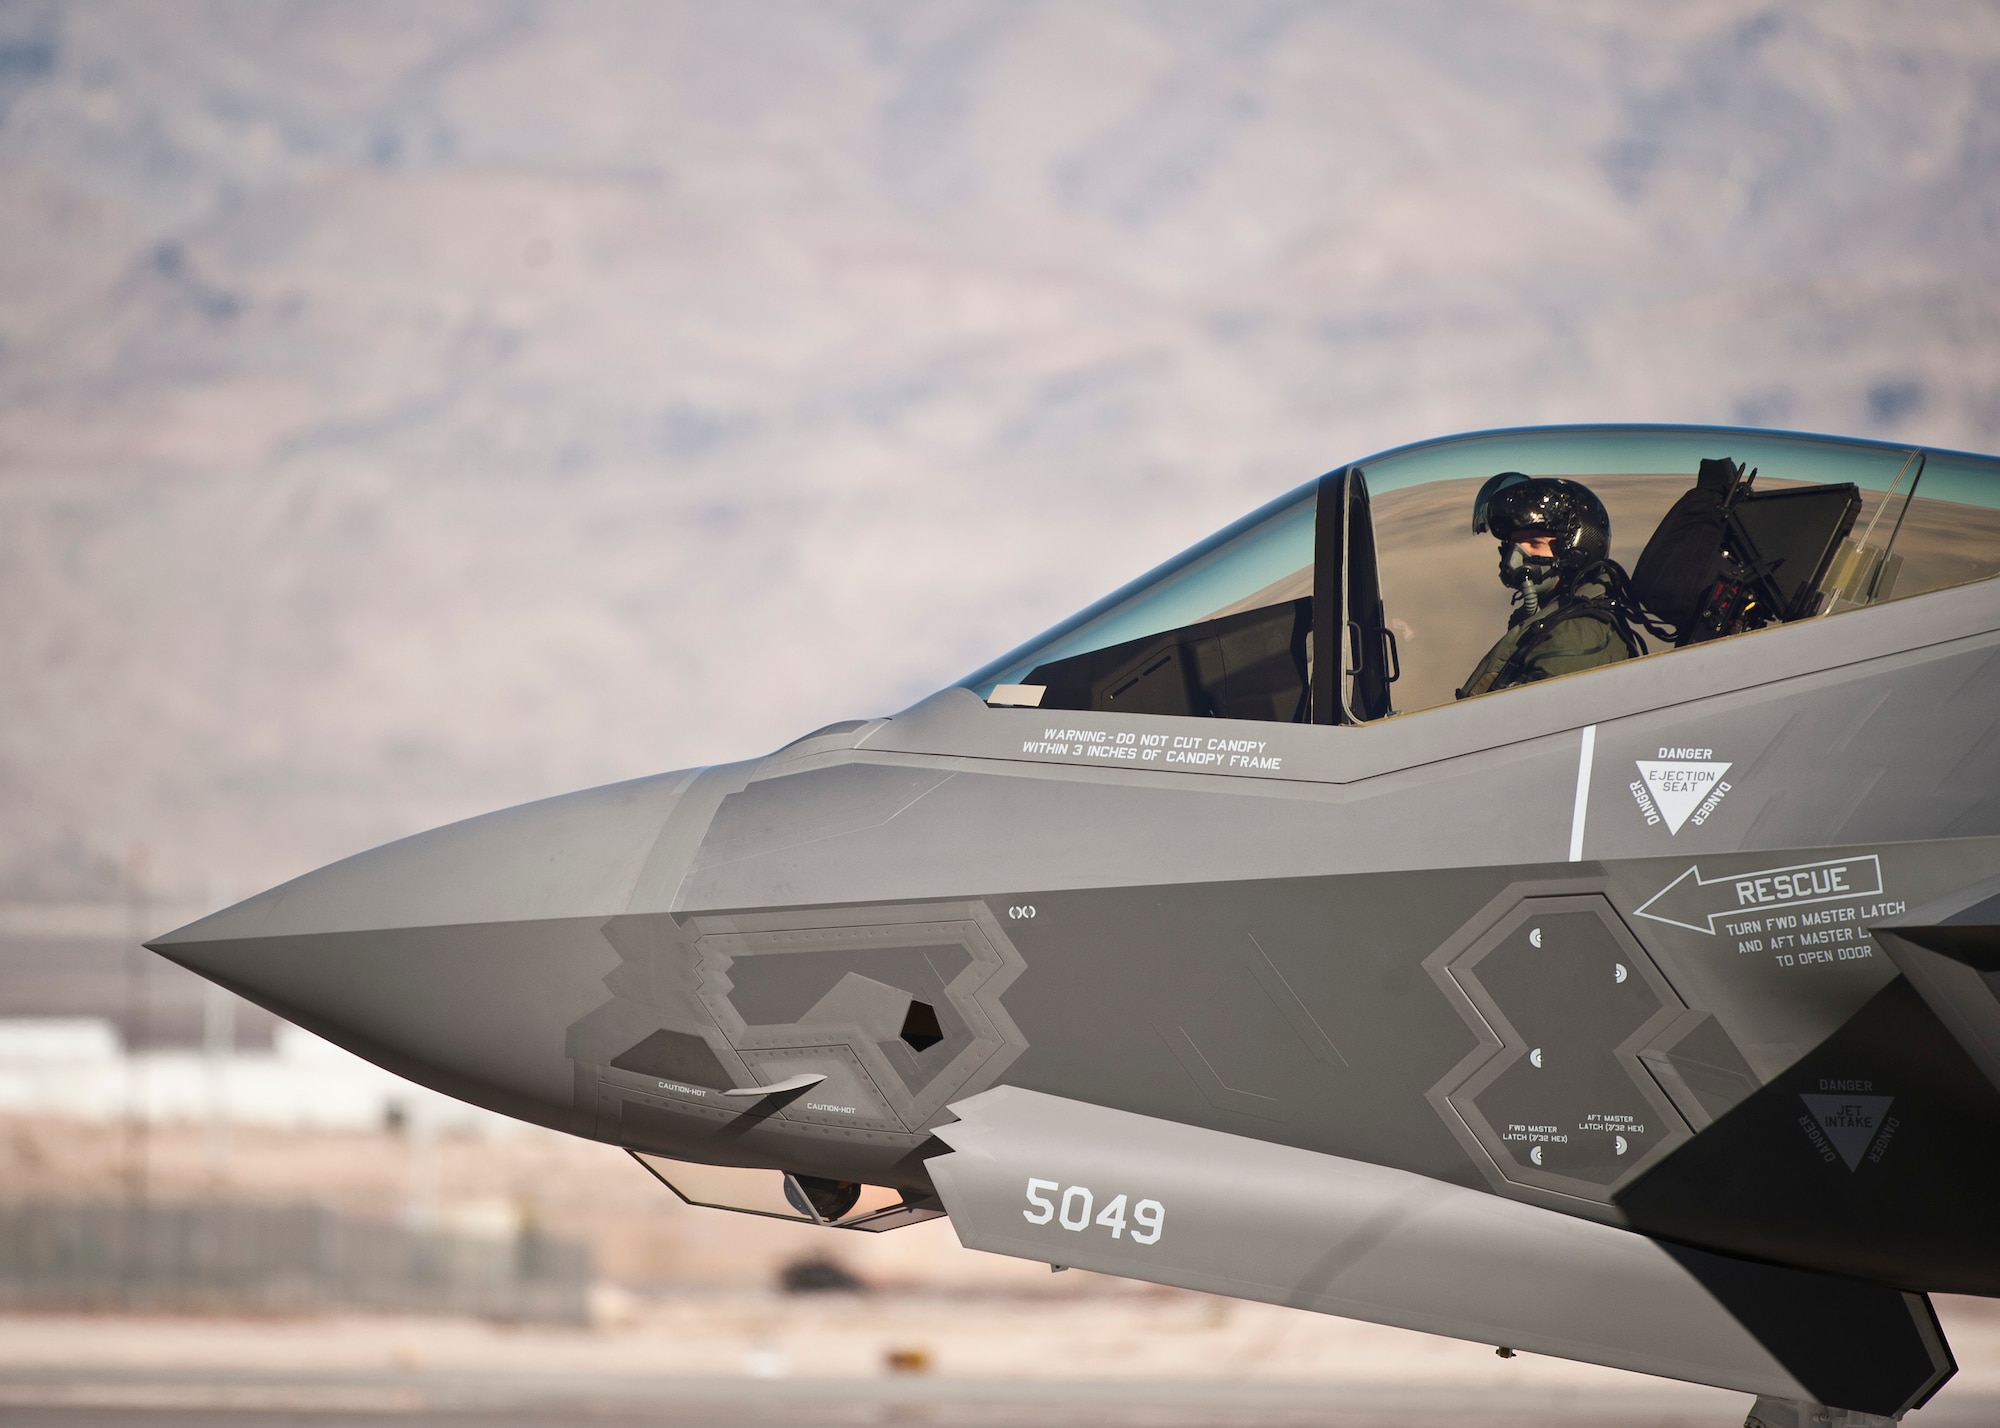 Sự xuất hiện của F-35 bắt đầu kỷ nguyên mới tại USAFWS > Căn cứ Không quân Nellis > Tin tức